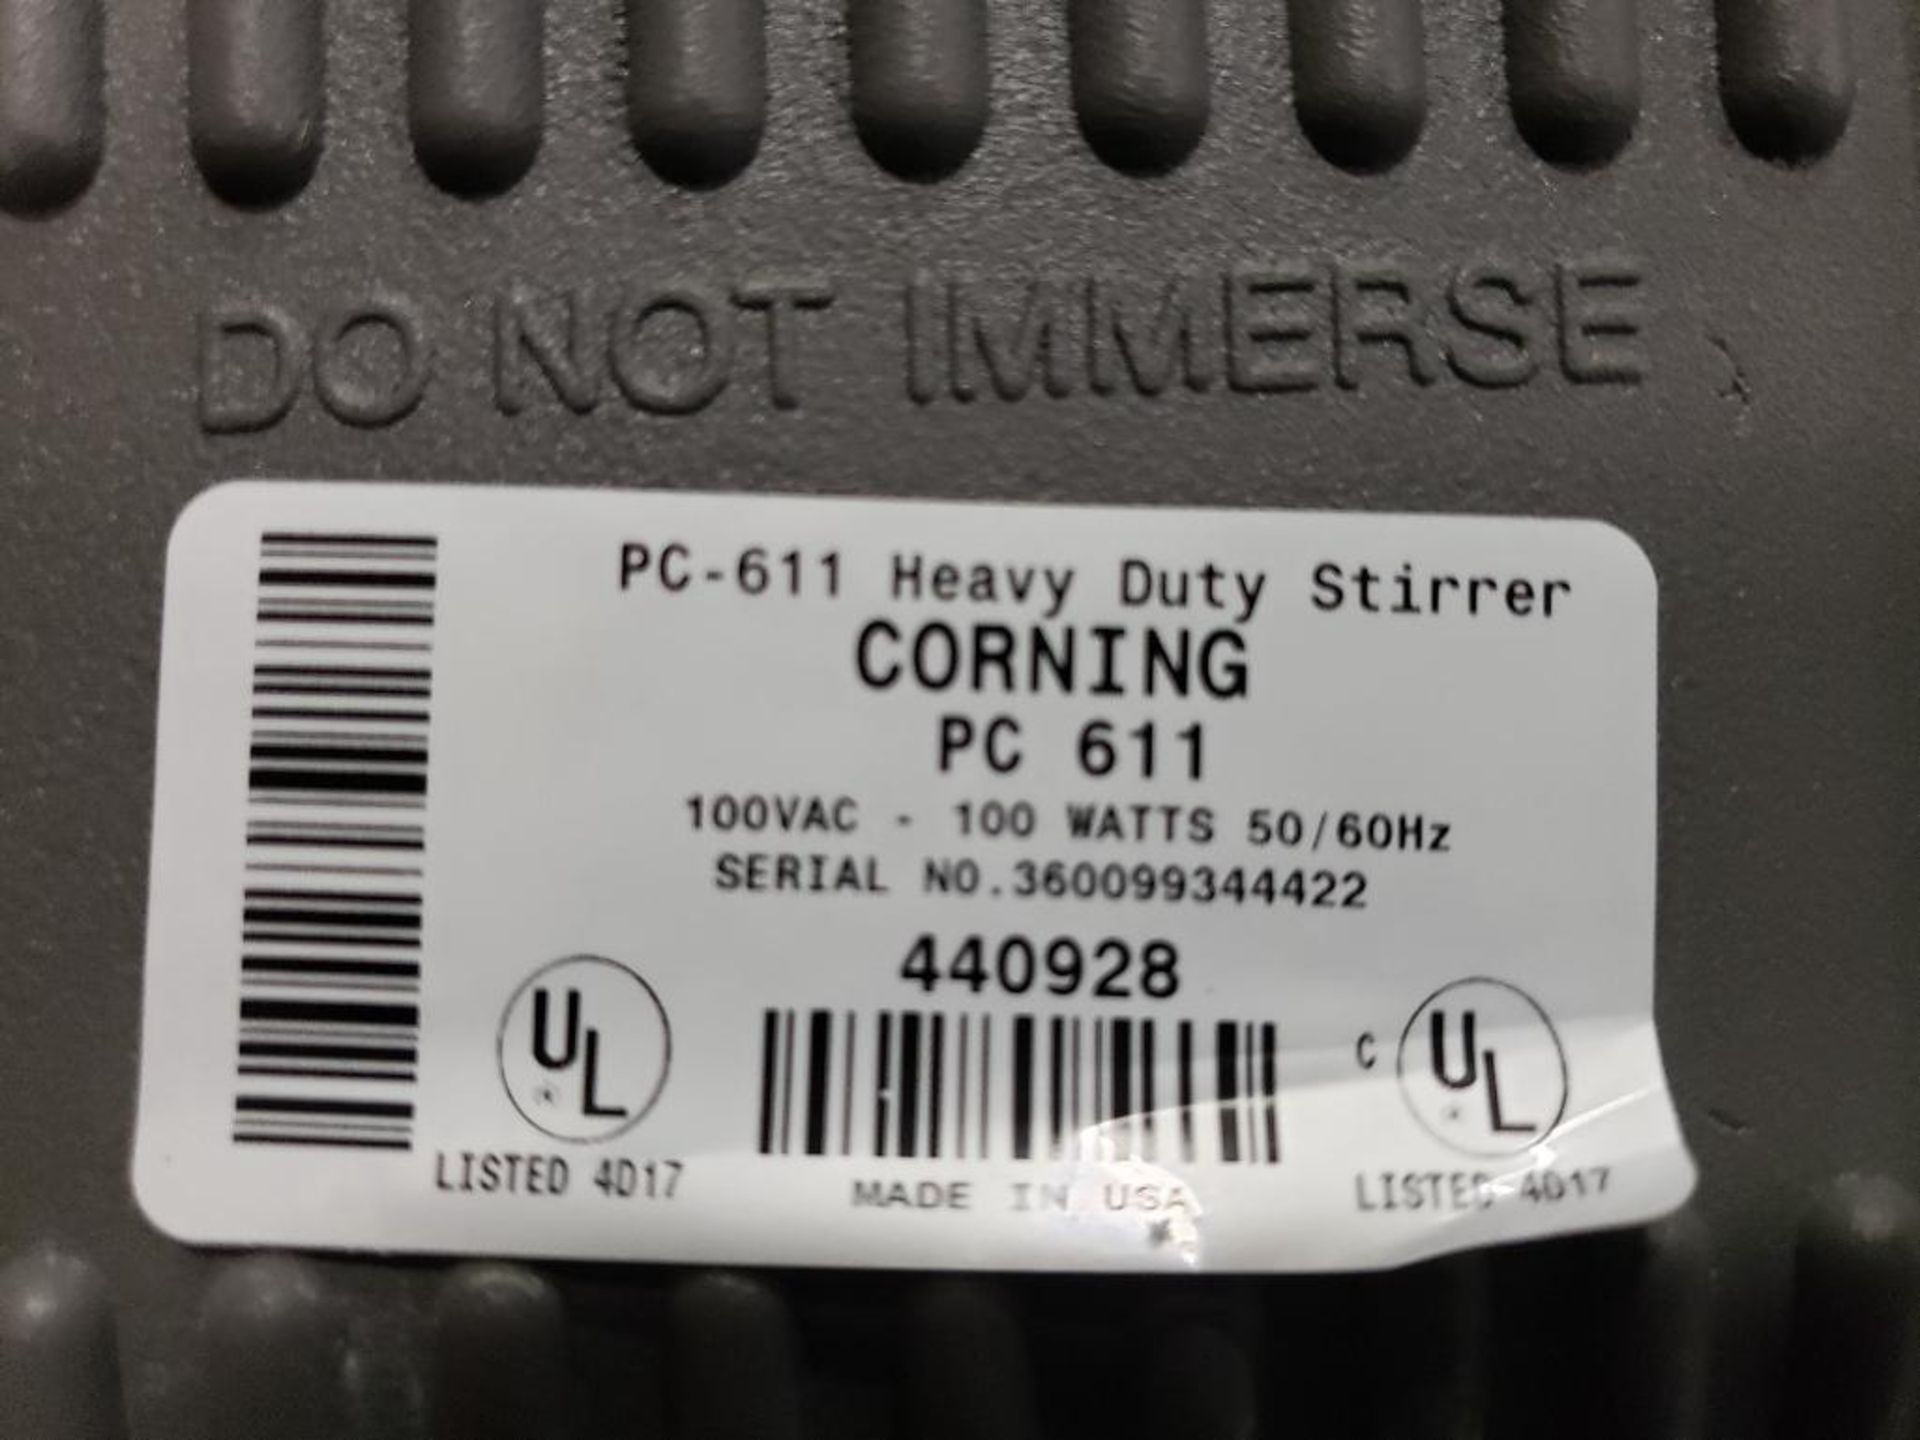 Corning Stirrer PC611 heavy duty stirrer. - Image 5 of 5